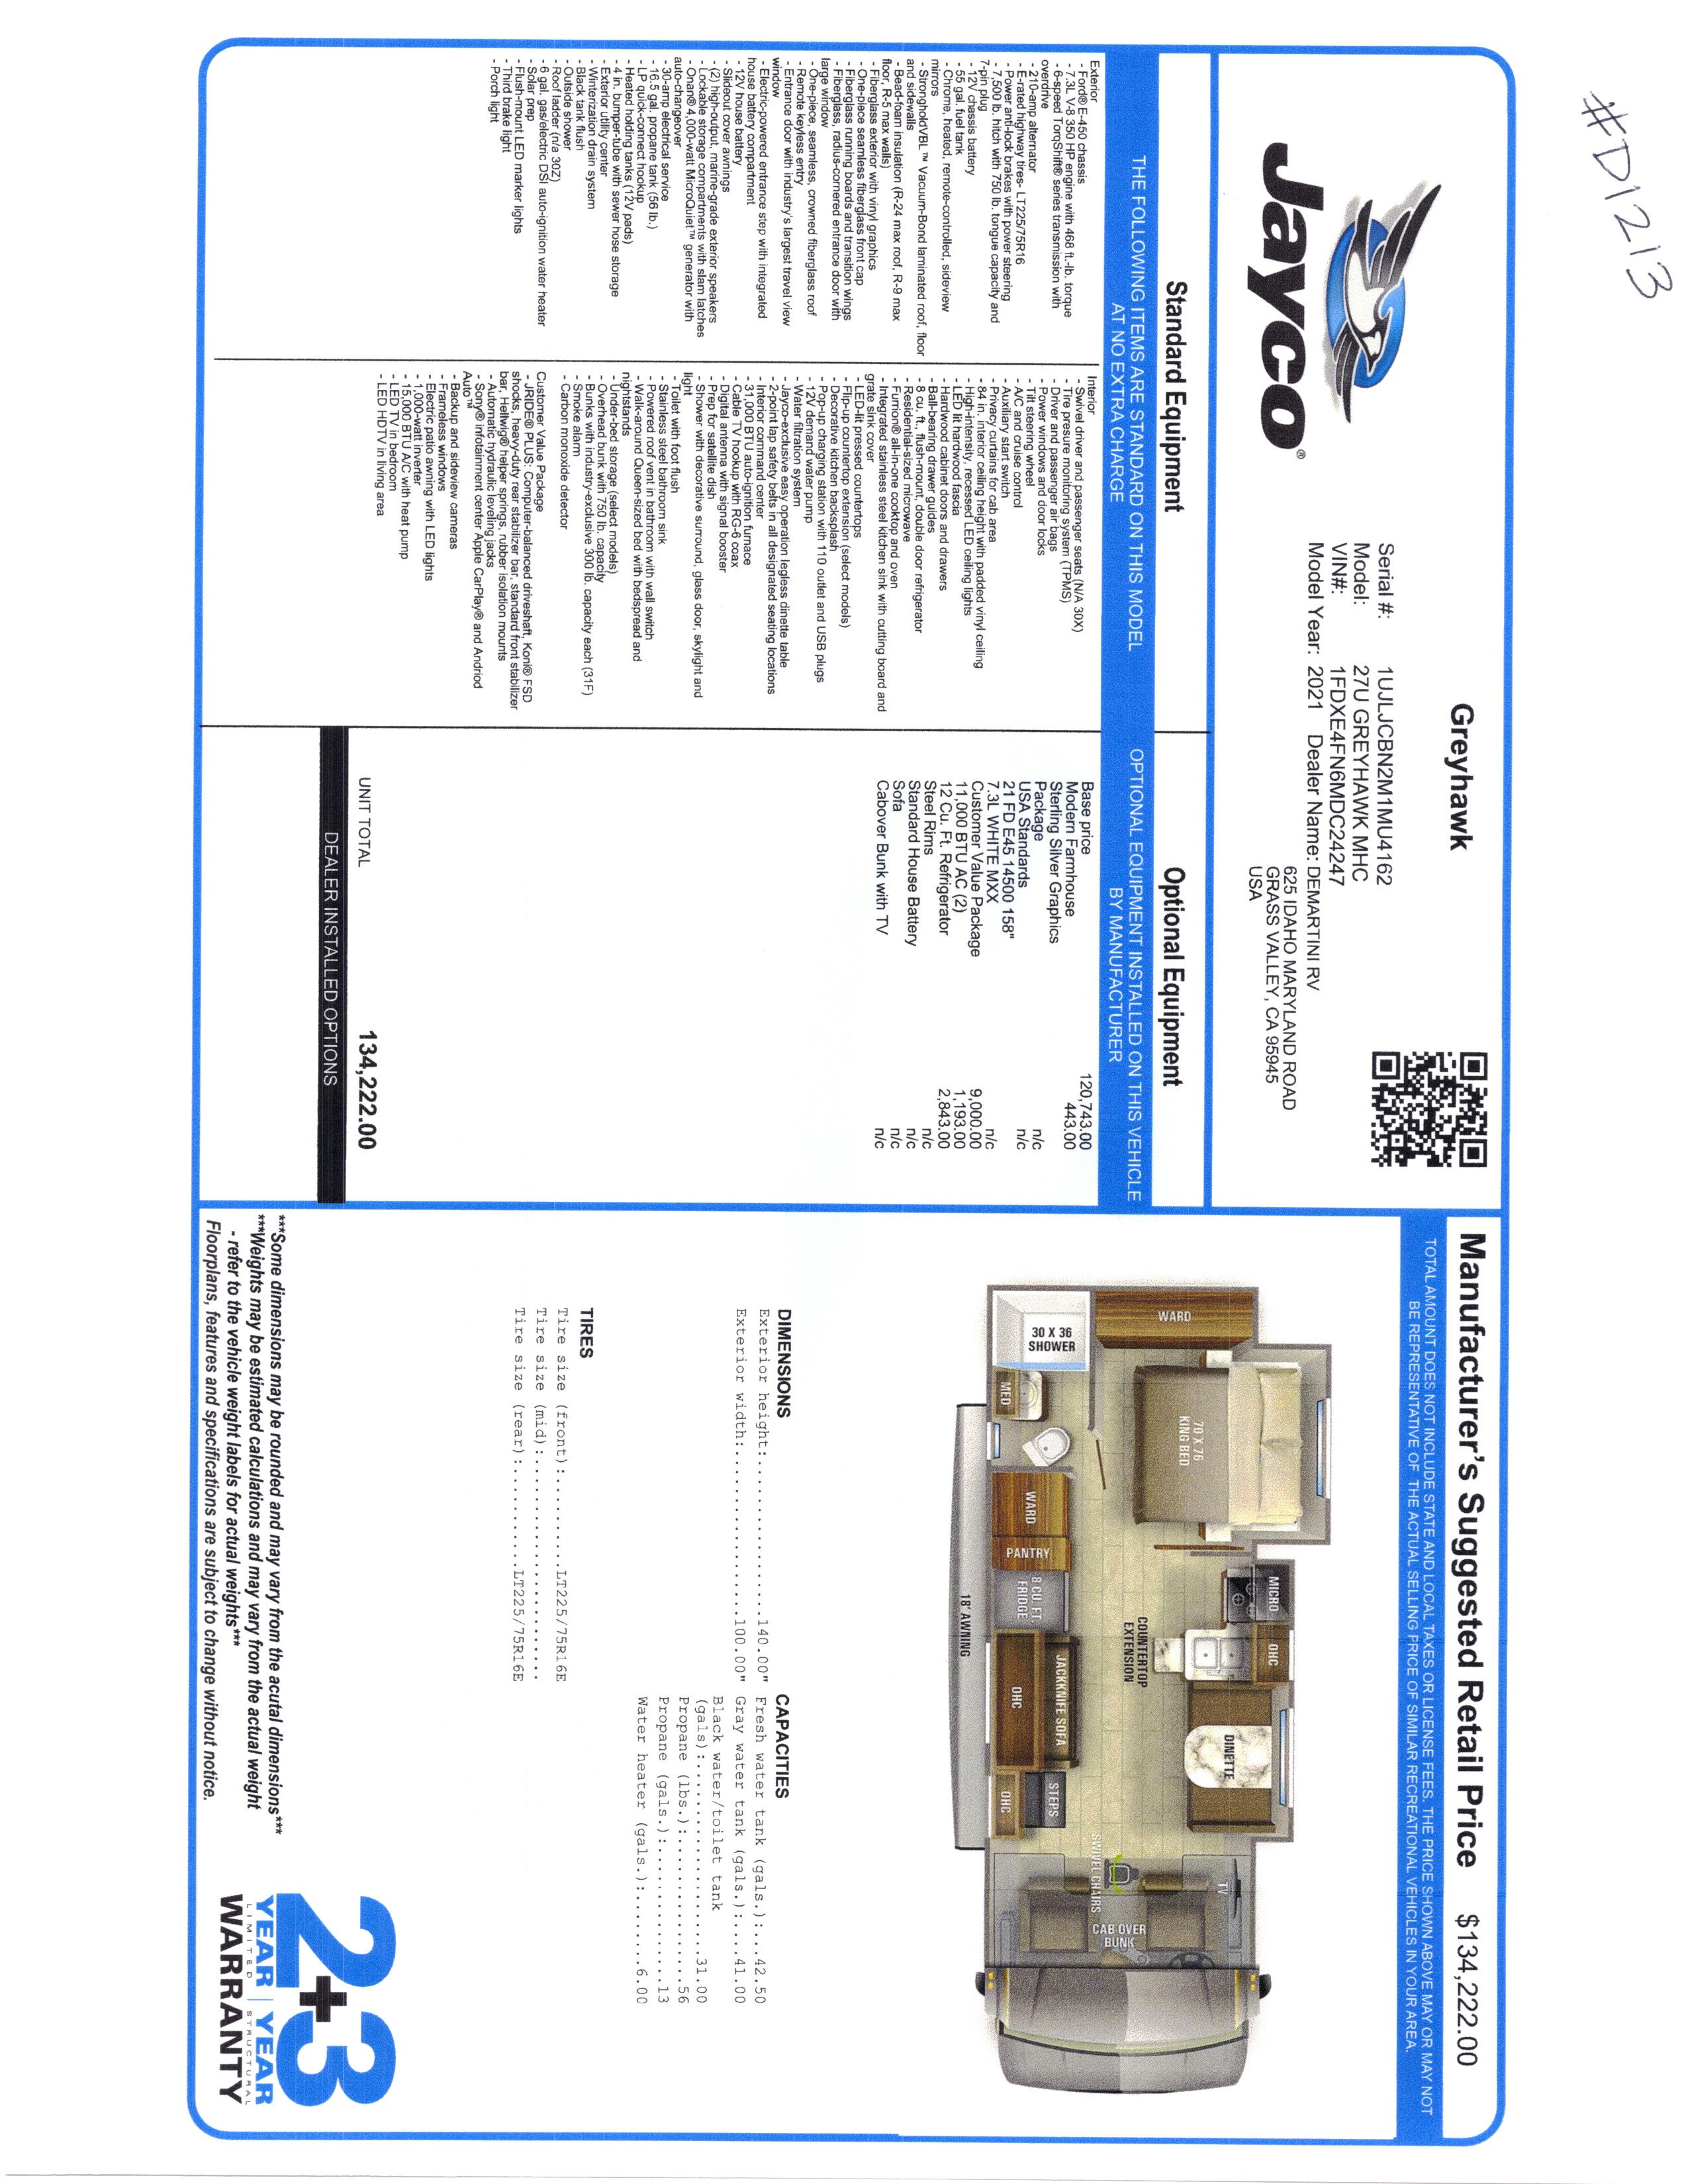 2021 Jayco Greyhawk 27U MSRP Sheet